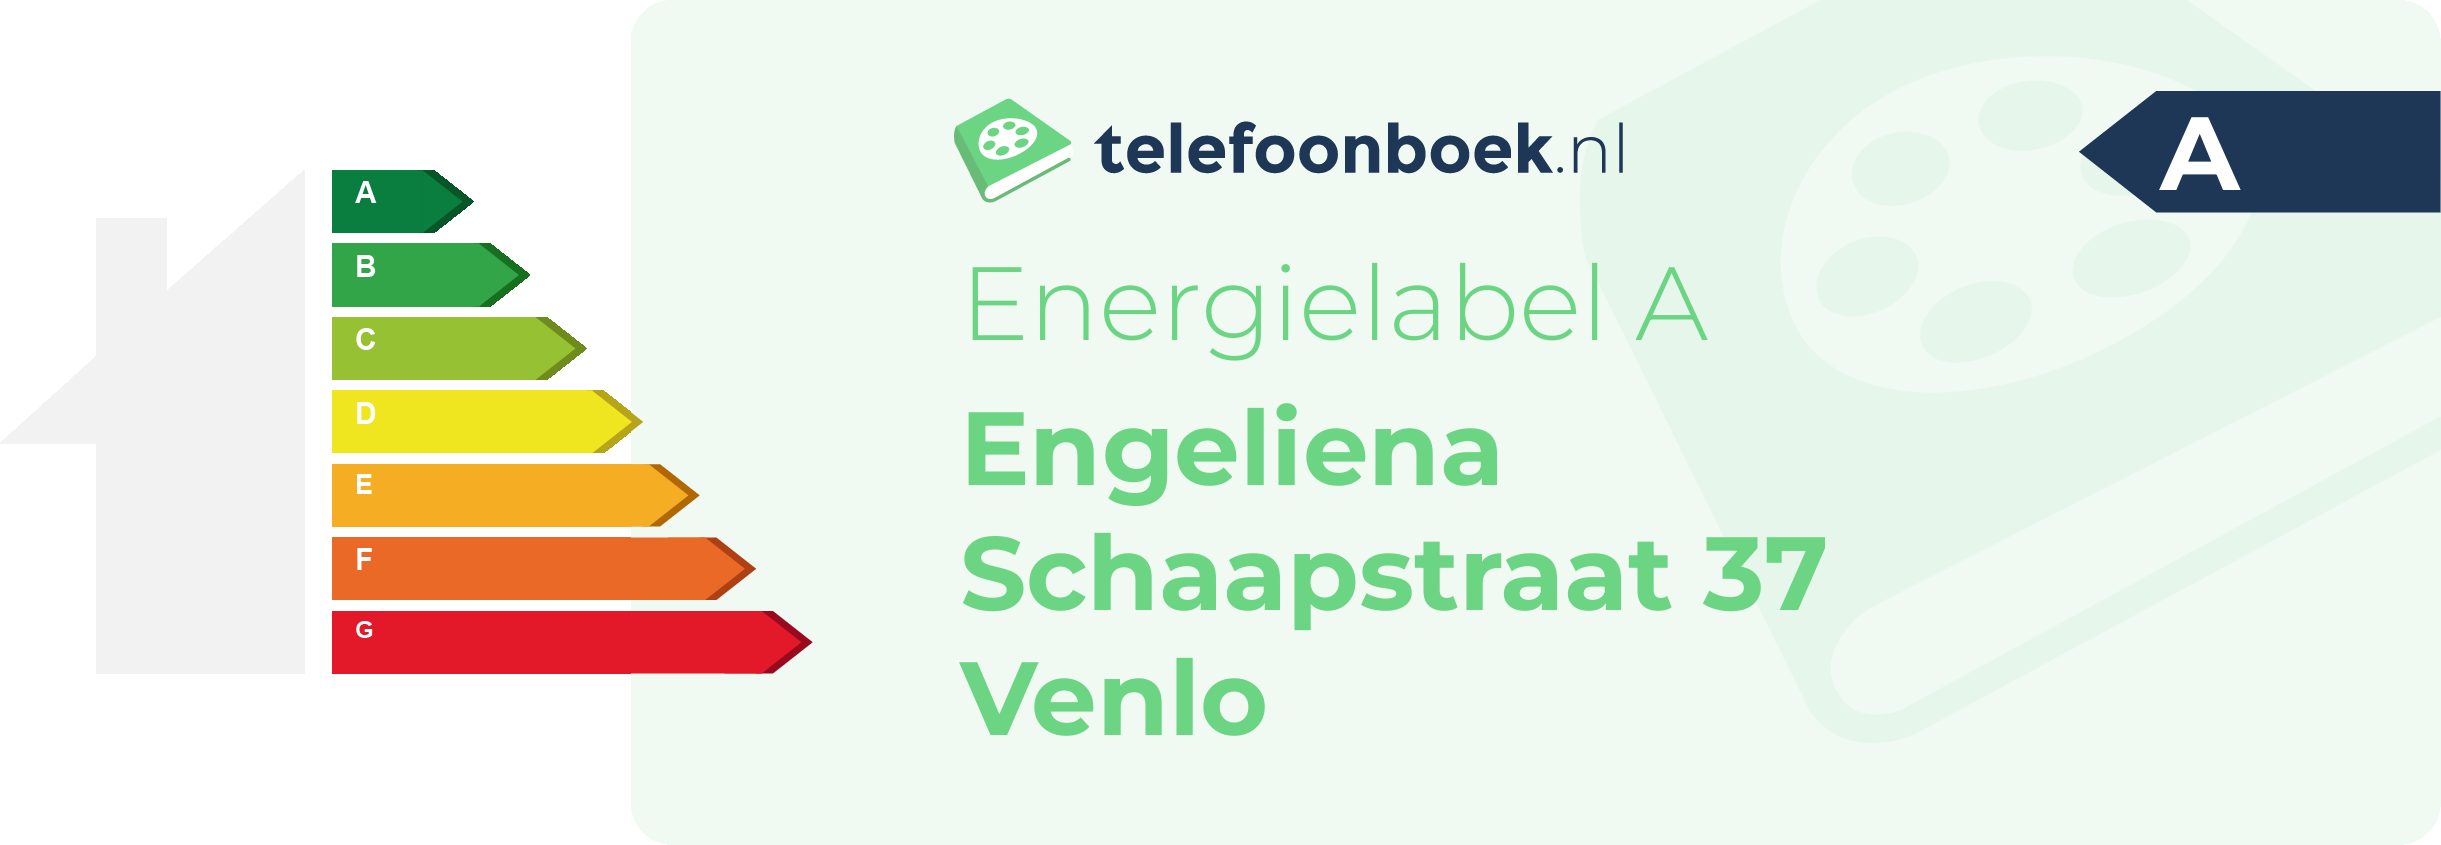 Energielabel Engeliena Schaapstraat 37 Venlo